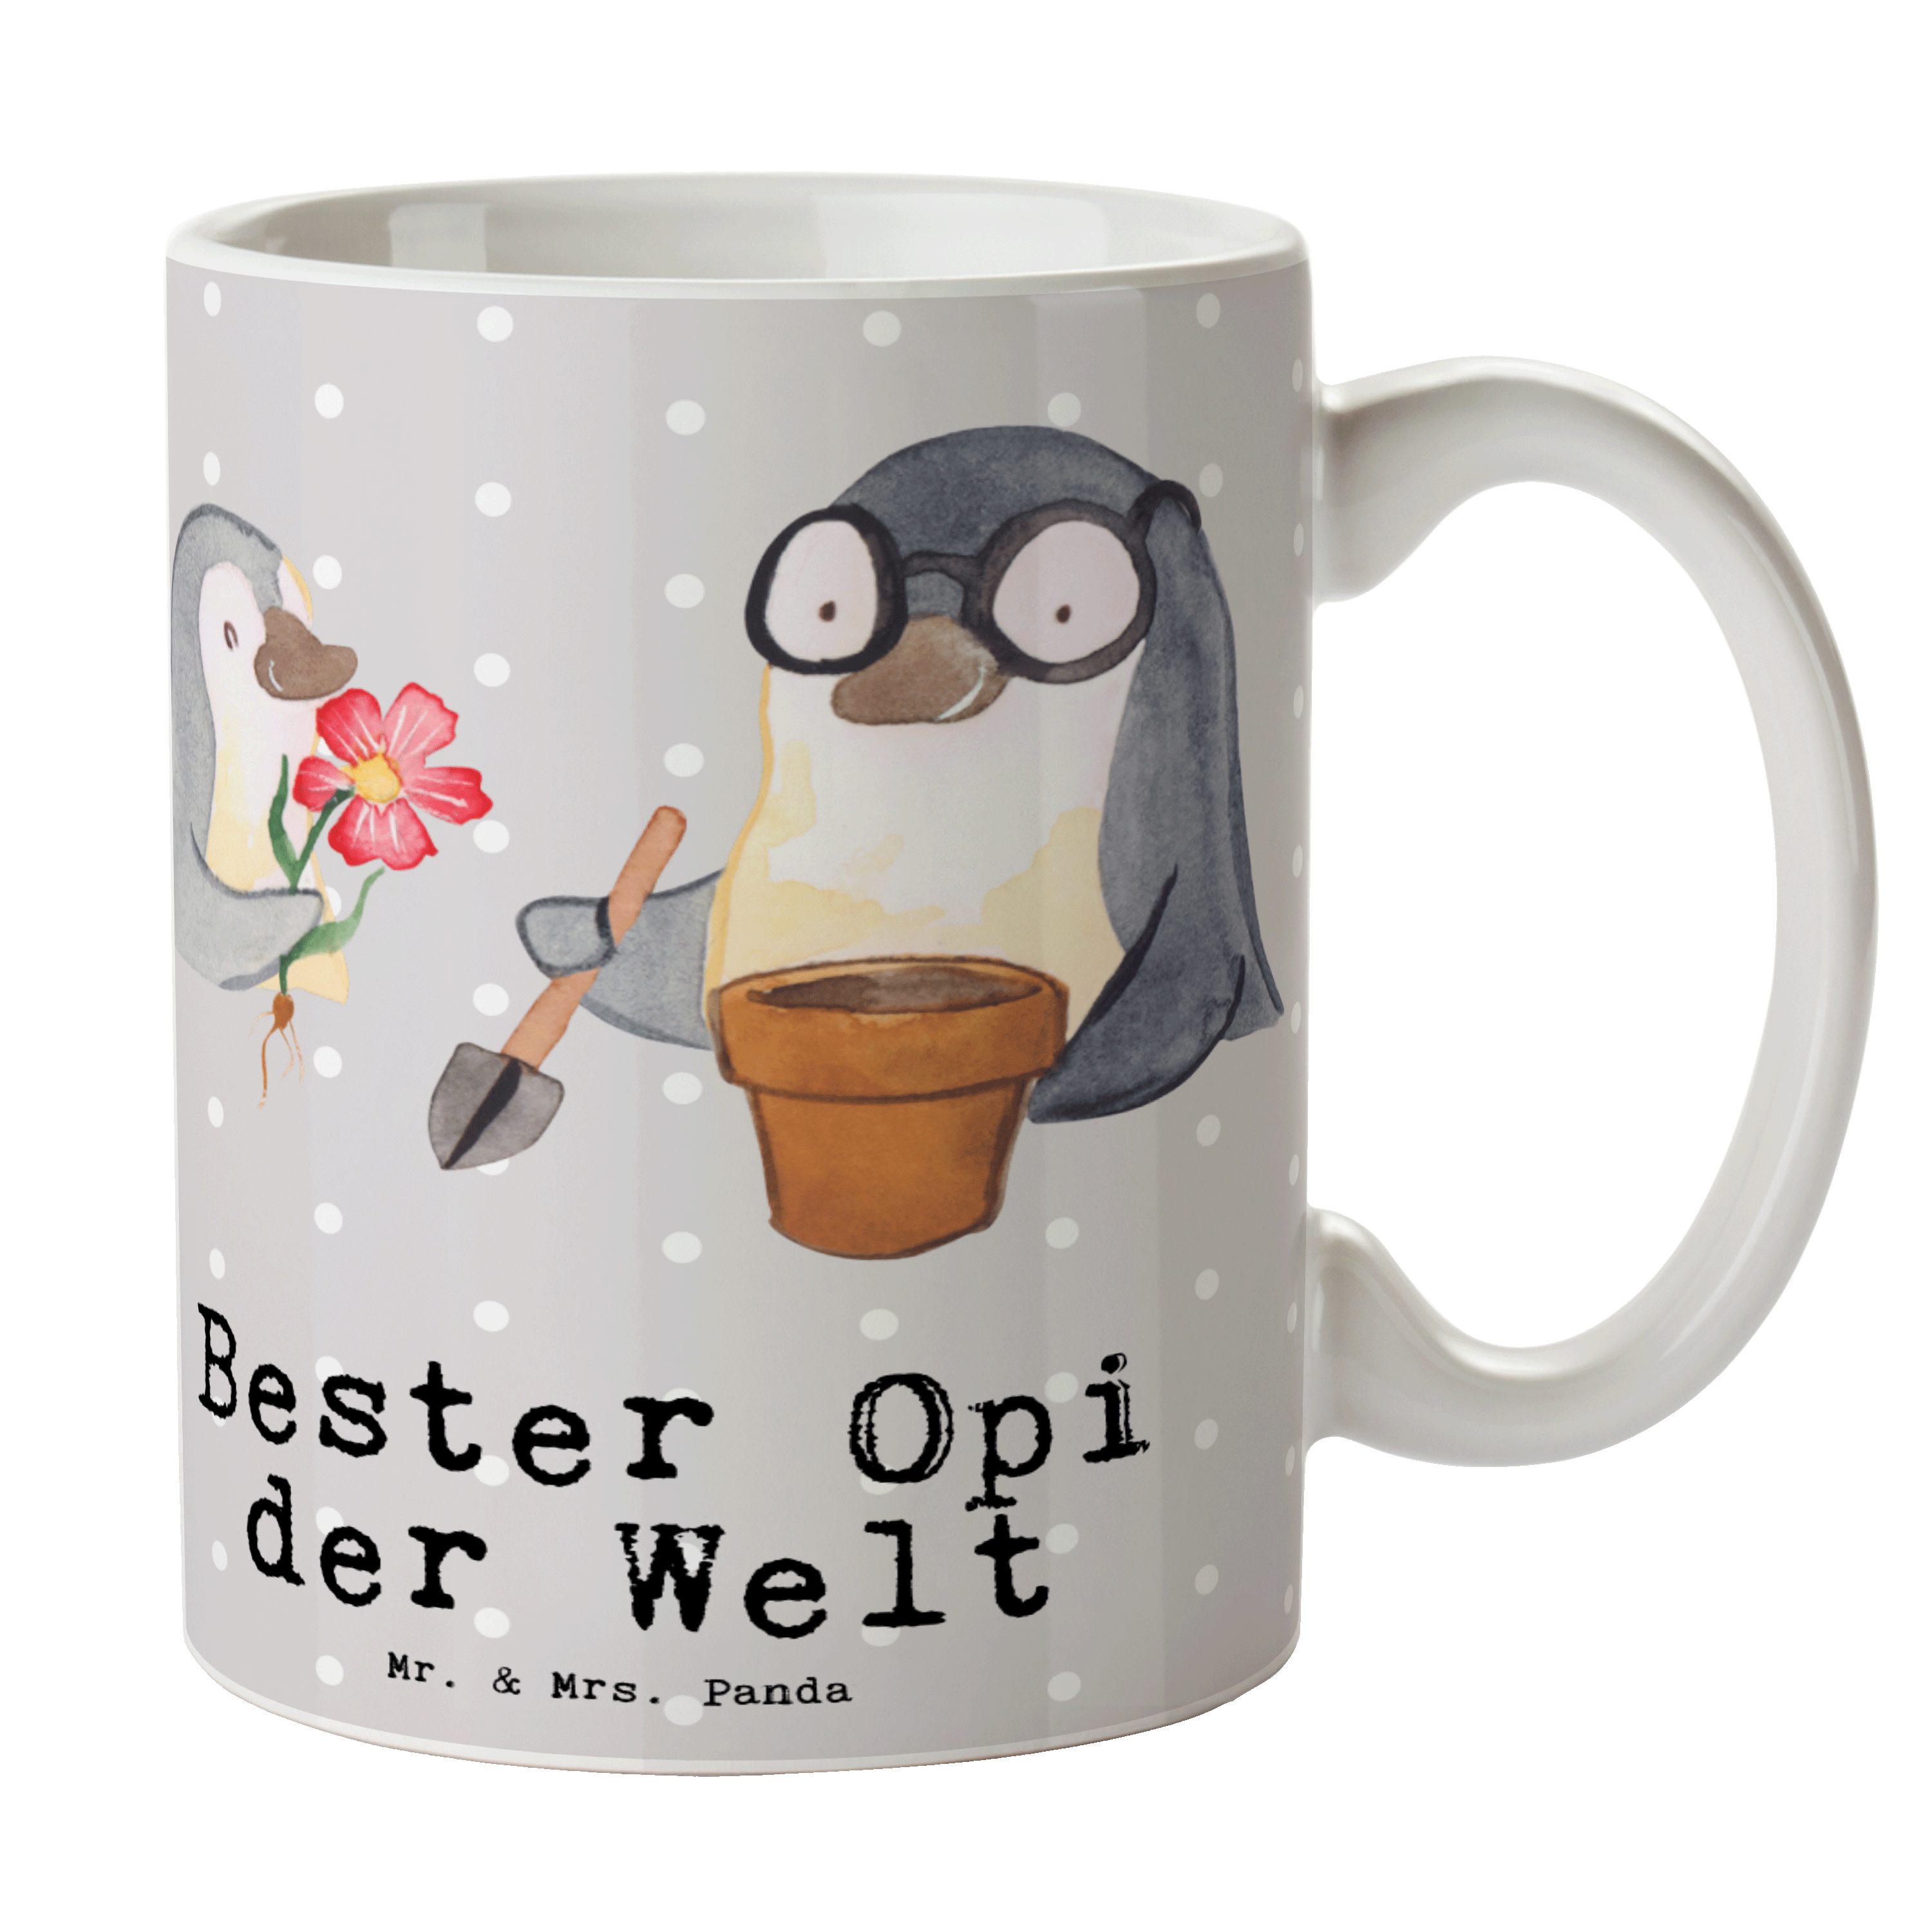 Mr. & Mrs. Panda Tasse Pinguin Bester Opi der Welt - Grau Pastell - Geschenk, Tasse Sprüche, Keramik | Tassen